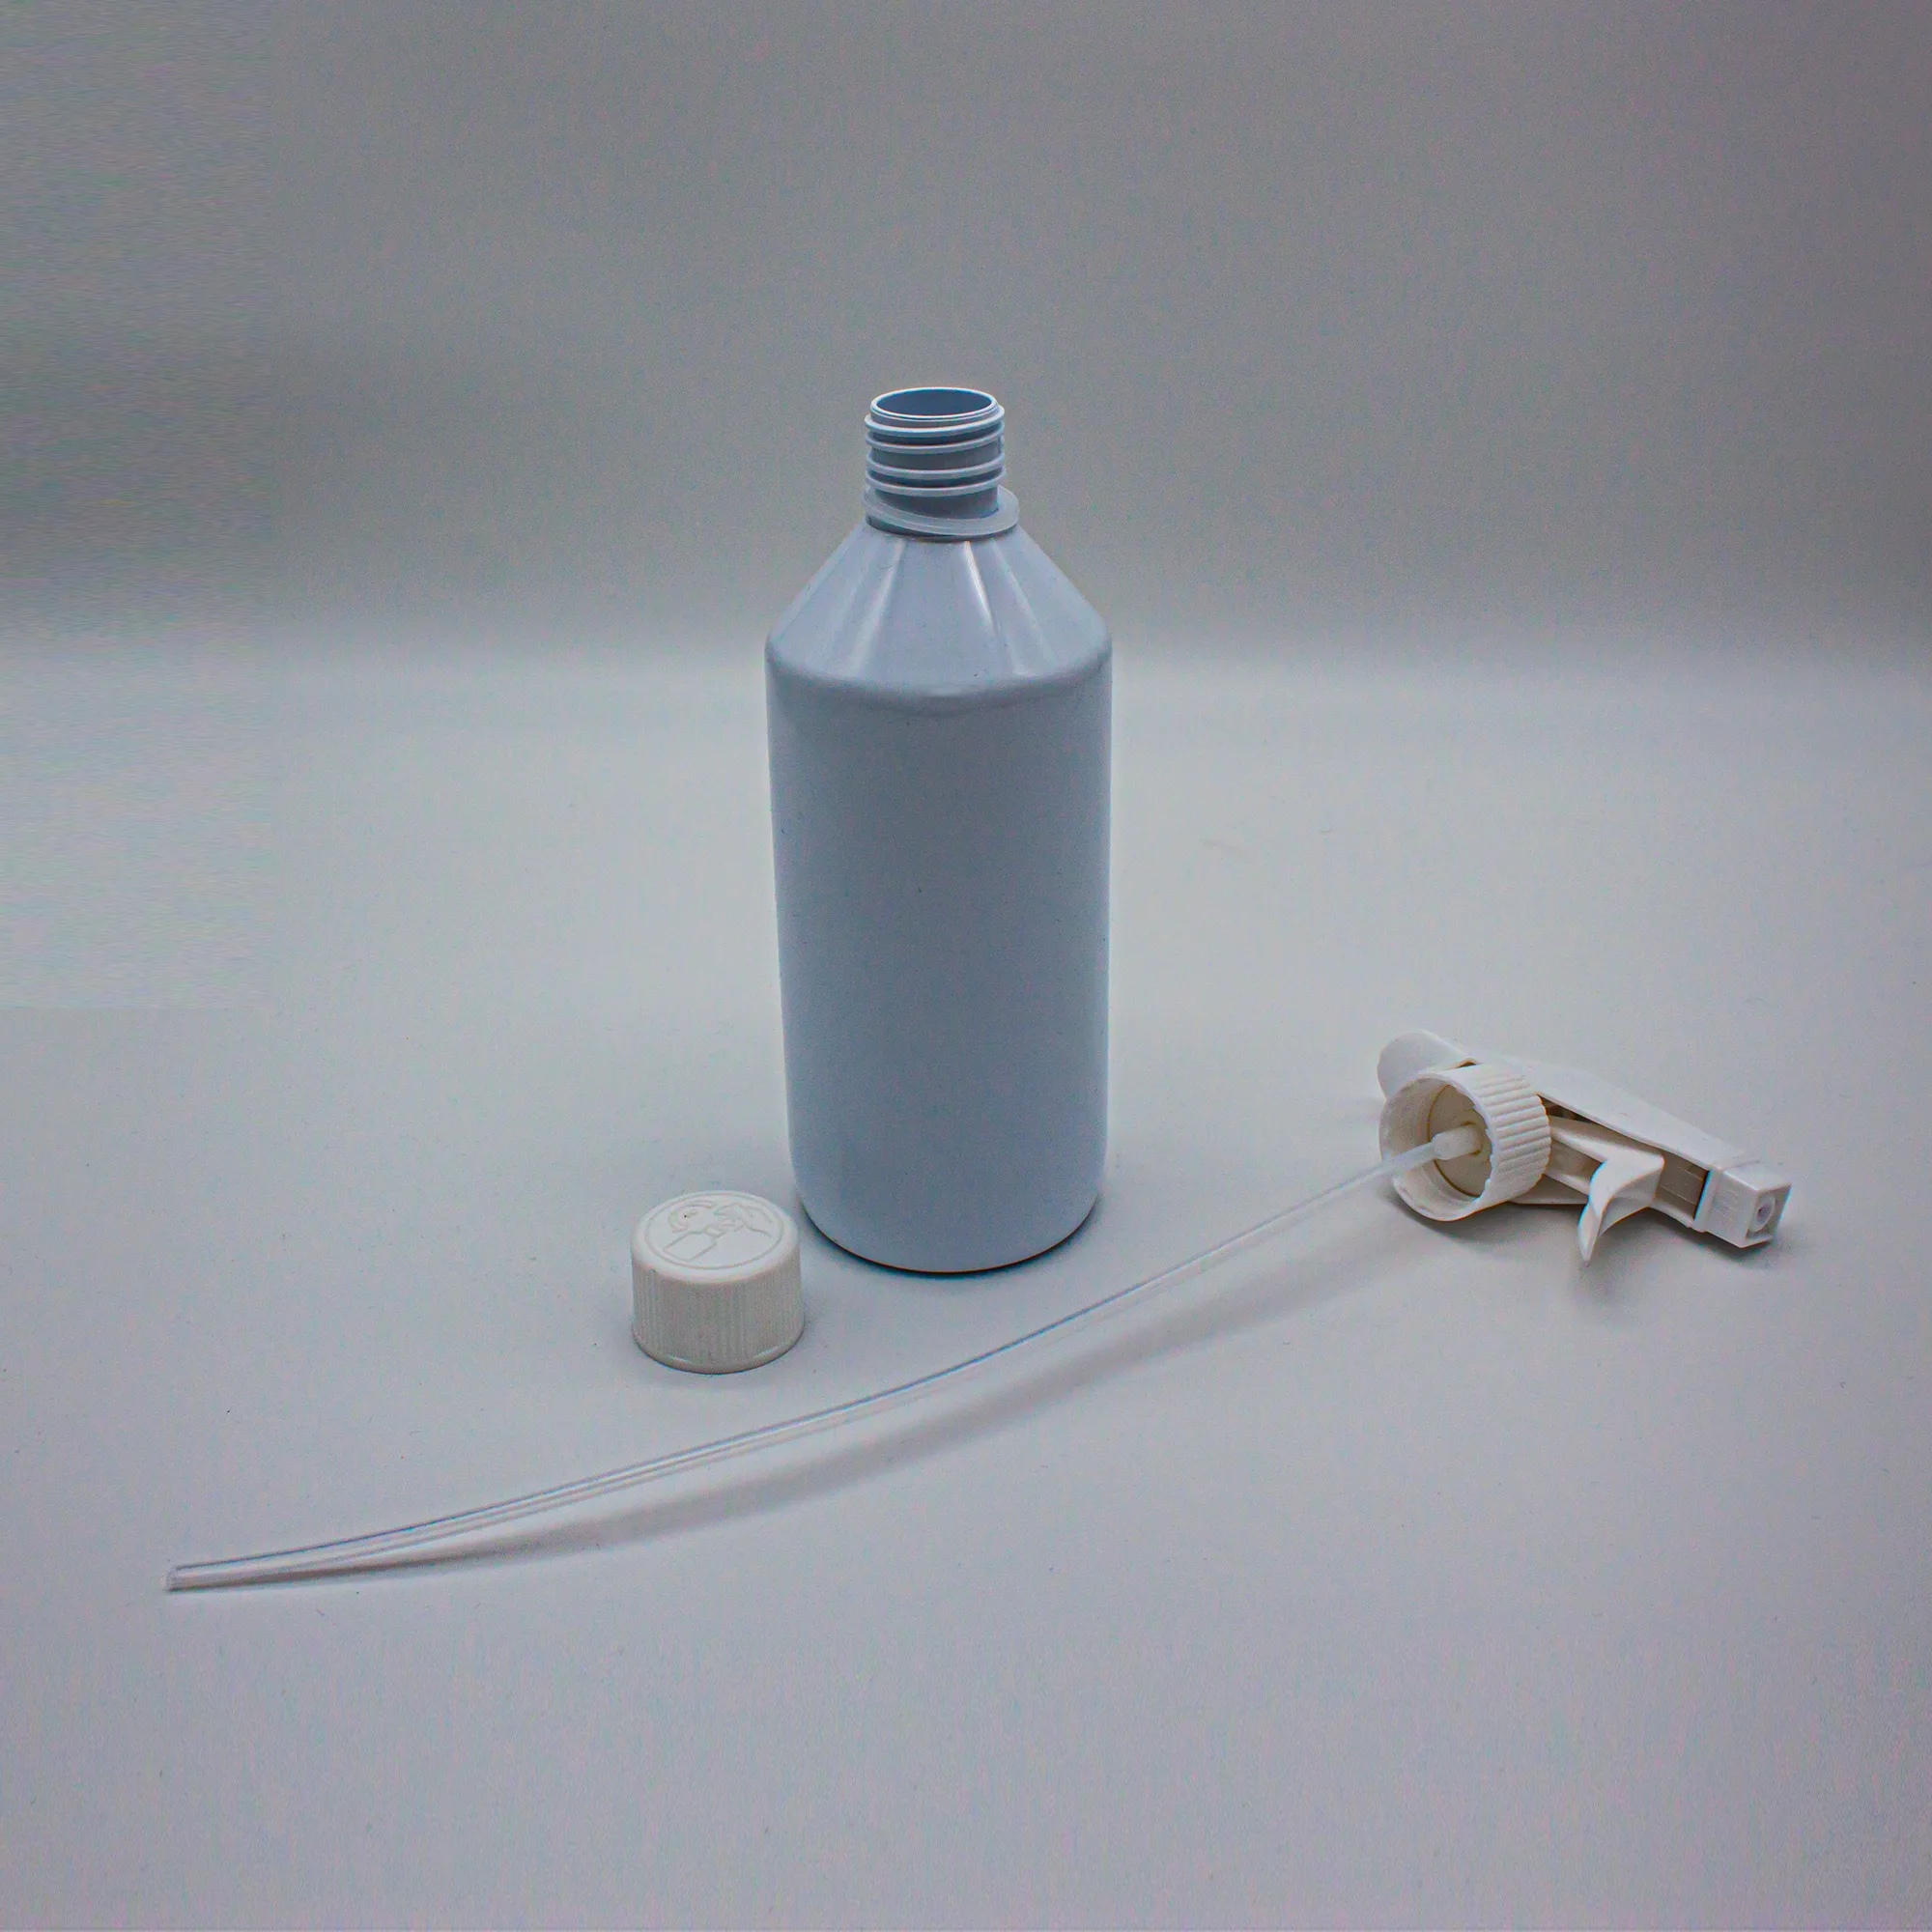 Produktbild Sprühflasche für Hobbybäcker 500ml